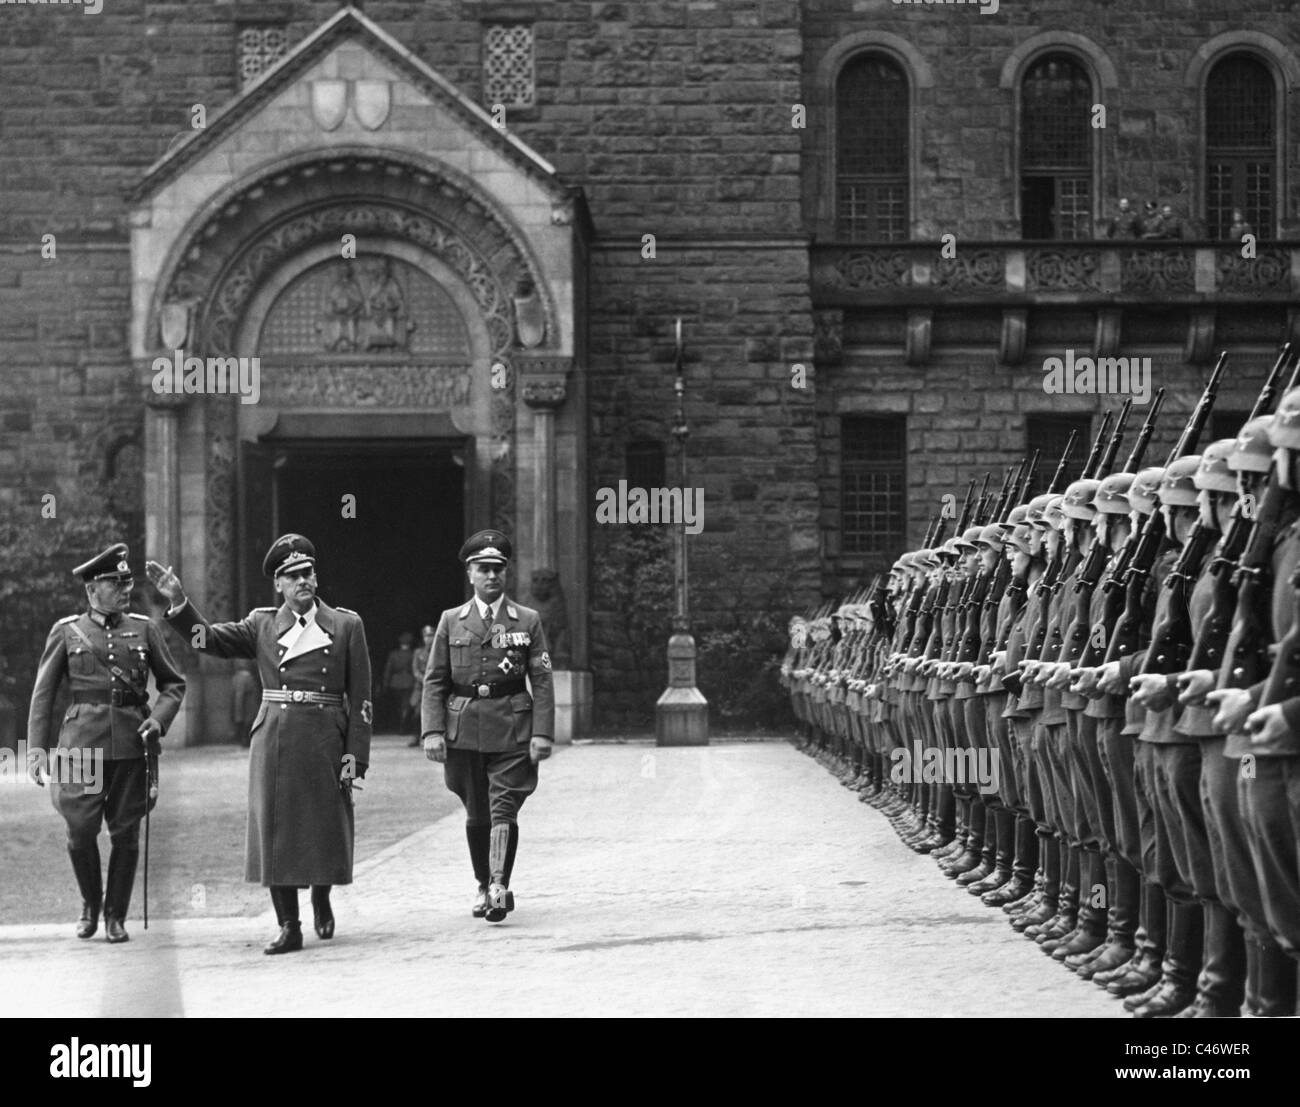 Second World War: Poland under German occupation, 1939 - 1944 Stock Photo